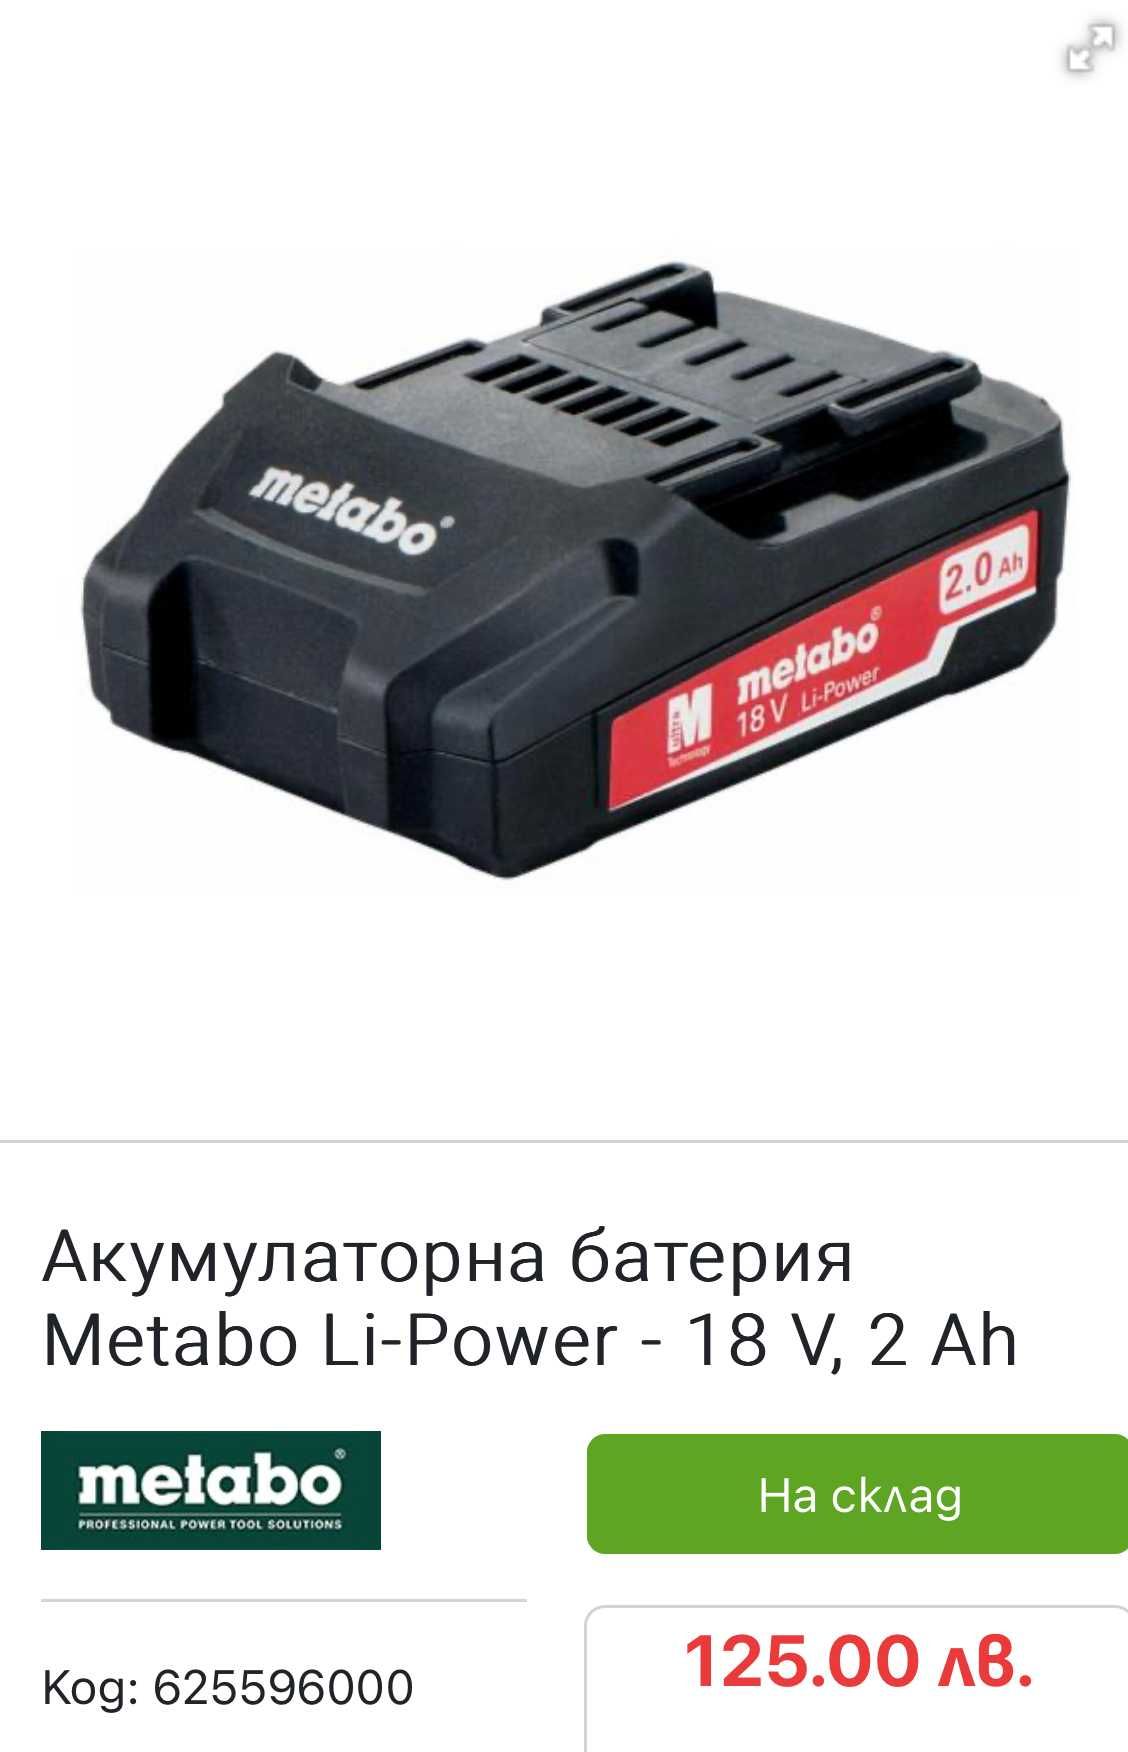 Metabo - Акумулаторна батерия 18V 2.0Ah